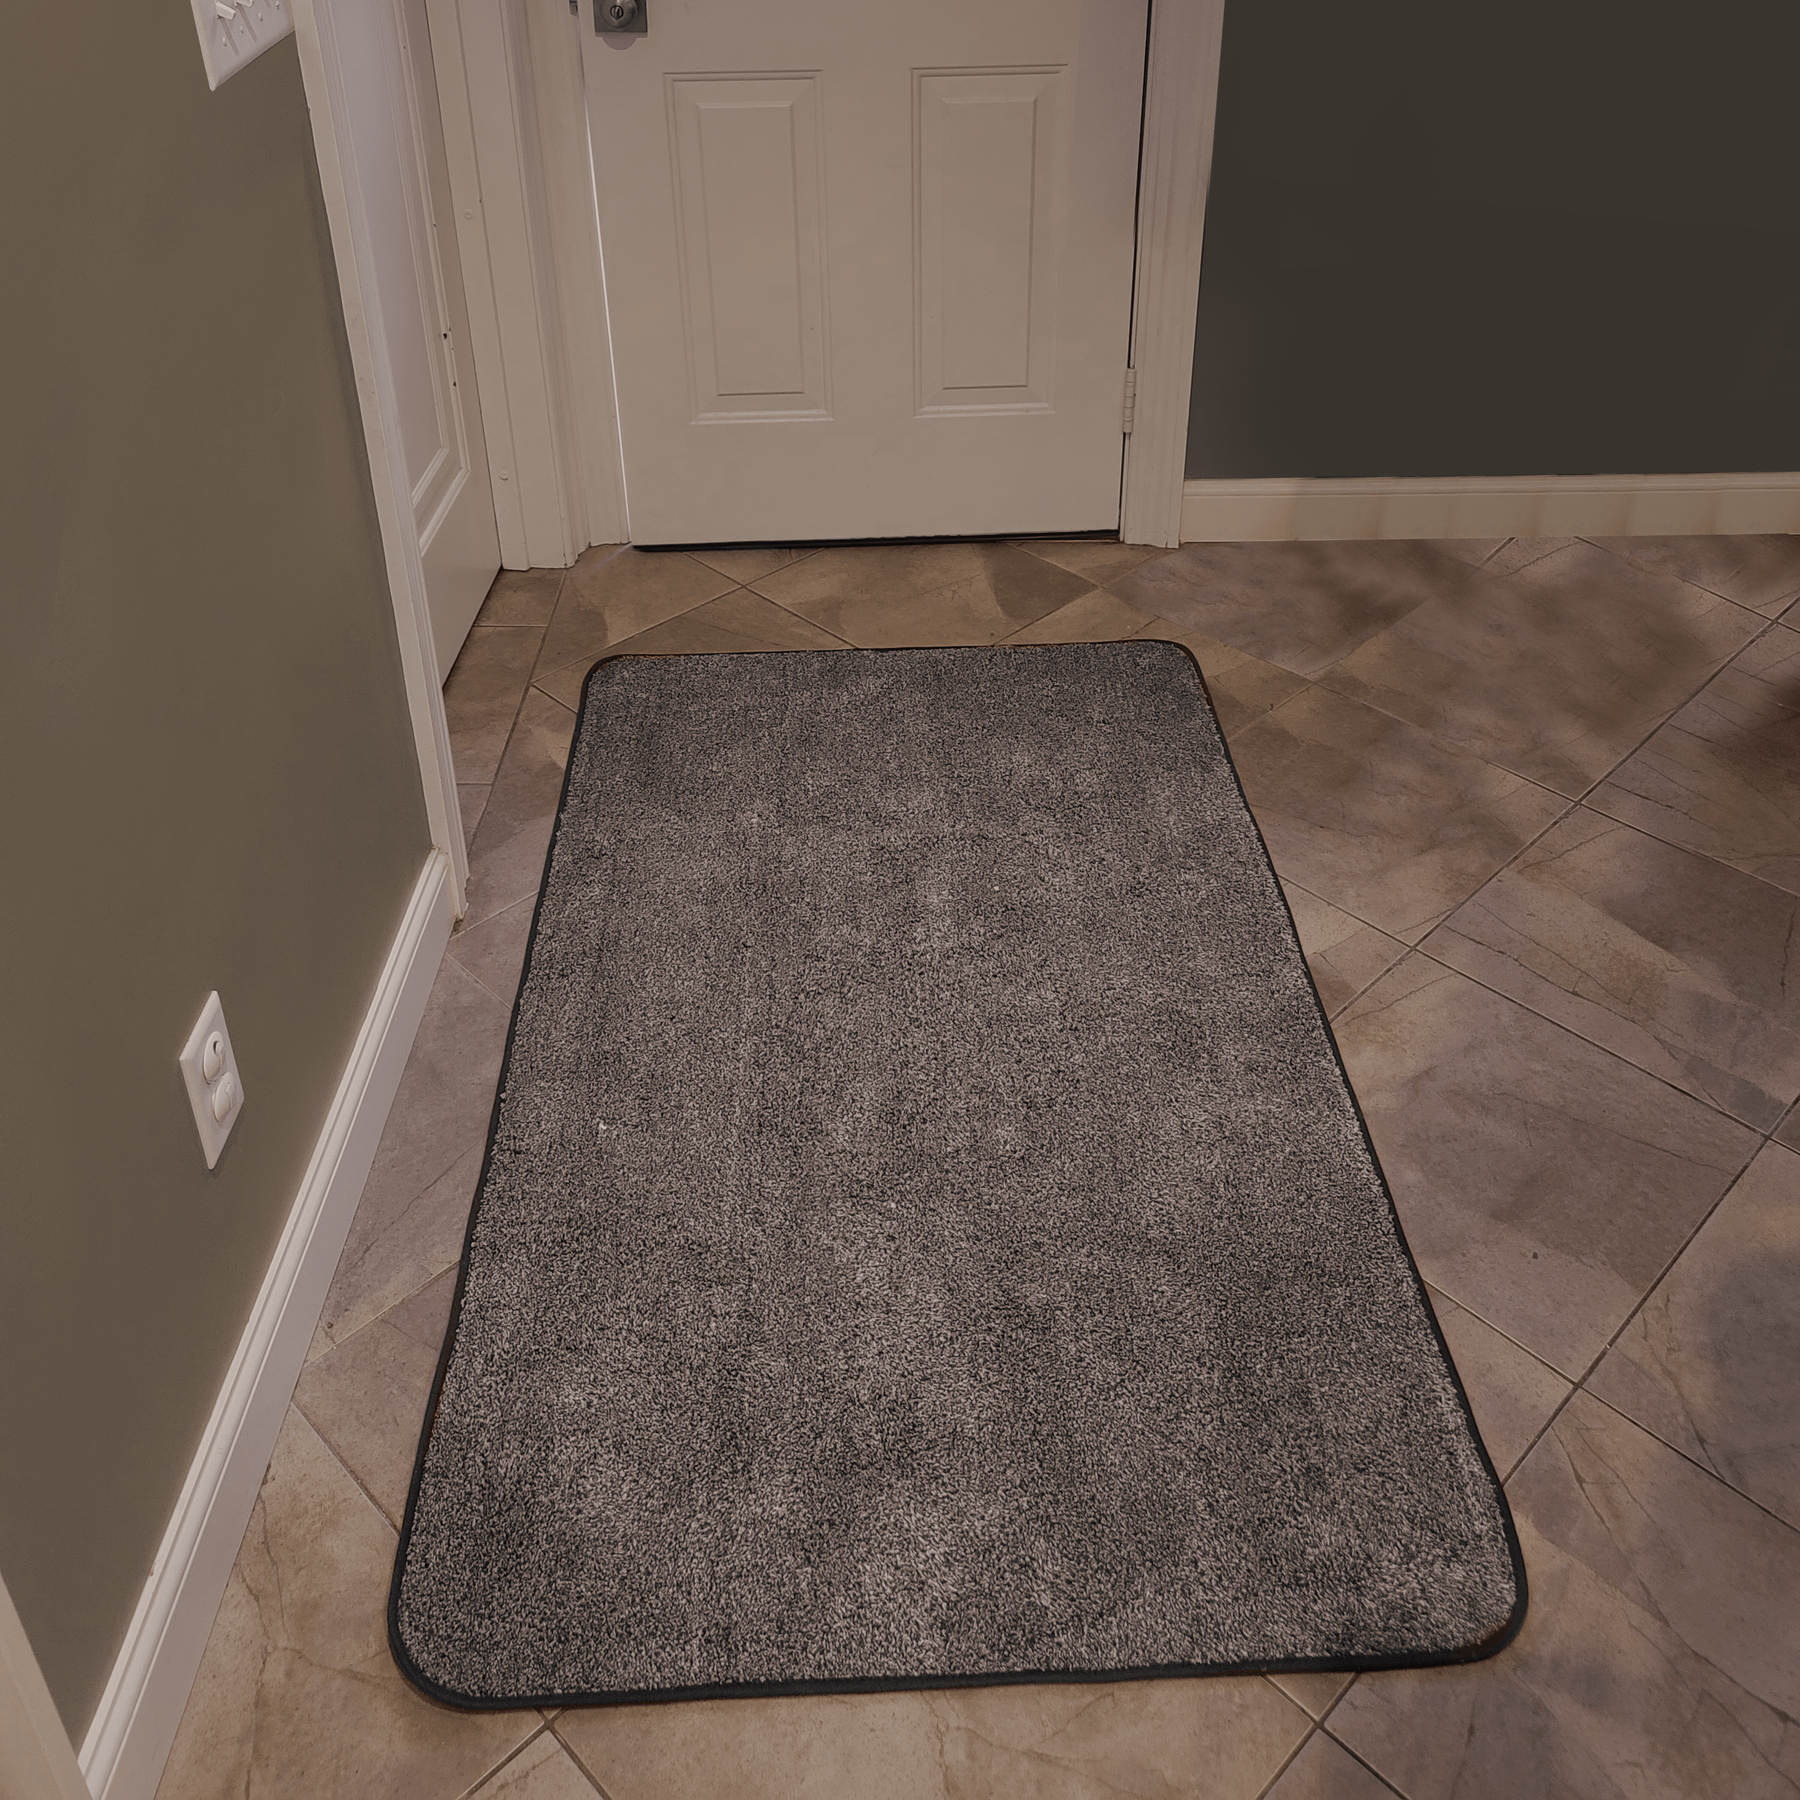 Delxo 24 x 36 Inch Magic Doormat Absorbs Mud Doormat No Odor Durable A